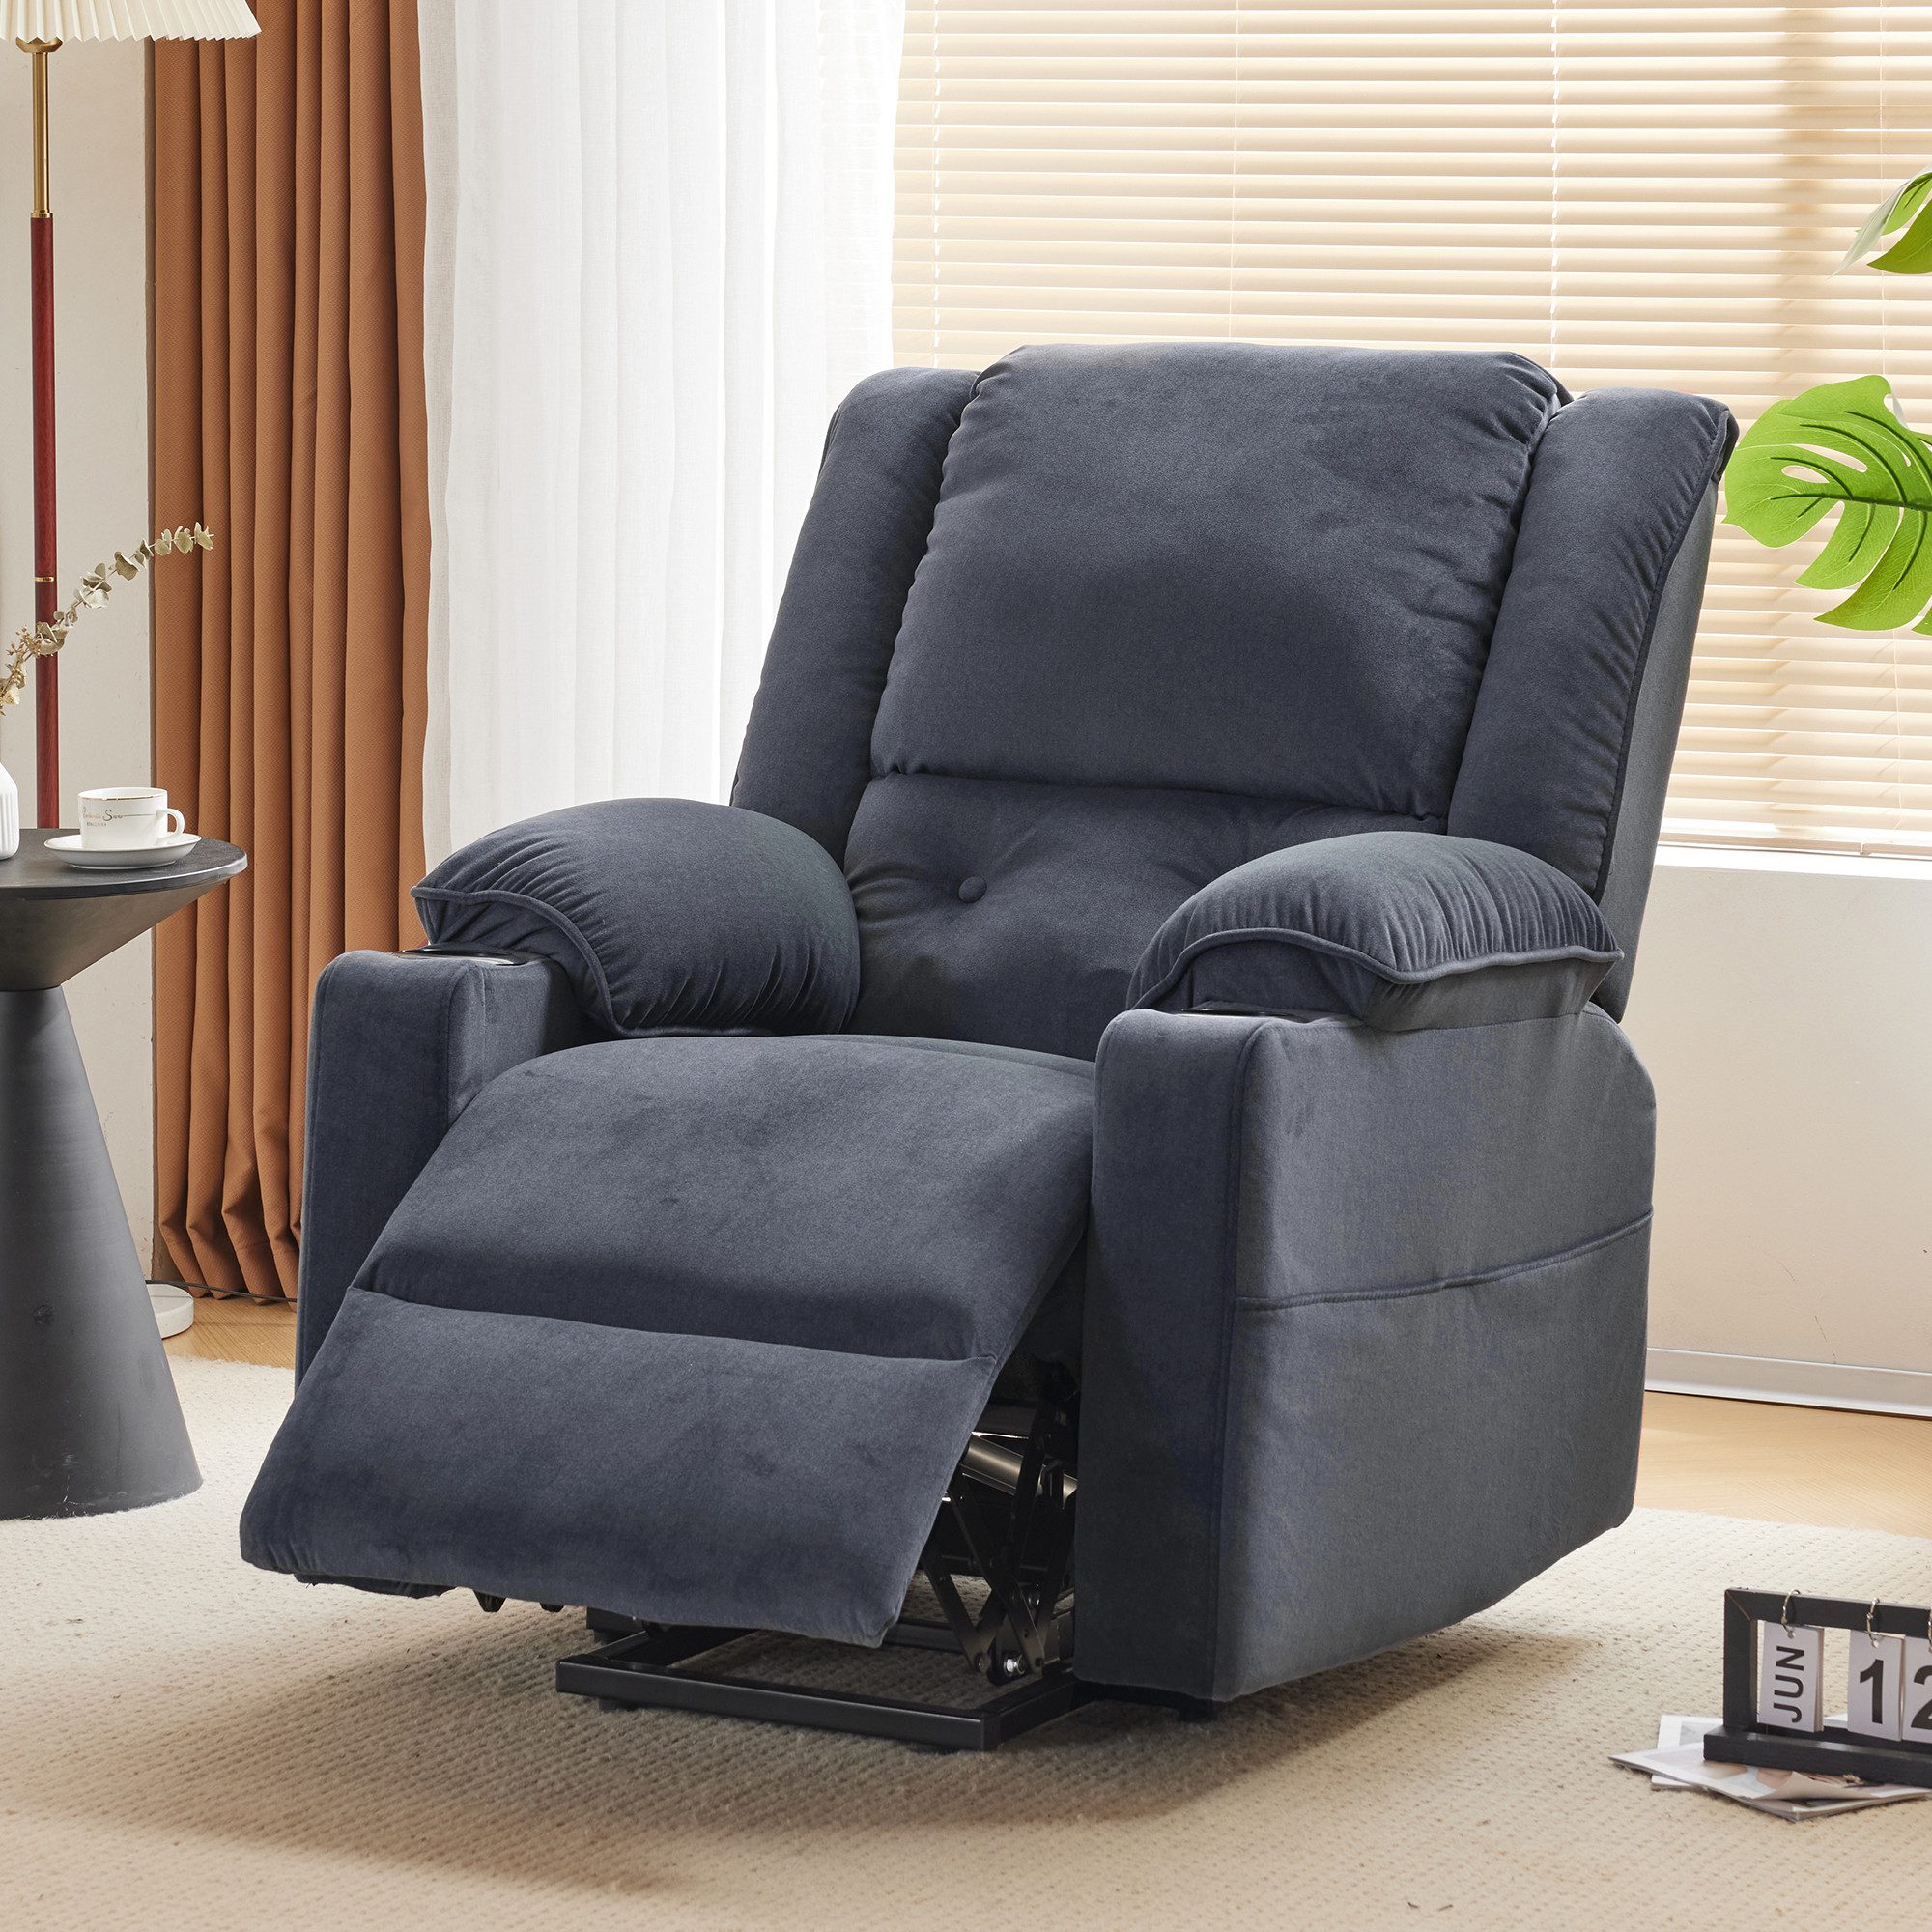 Merax TV-Sessel elektrisch mit Seitentasche und Getränkehalter, Relaxsessel, Fernsehsessel mit Aufstehhilfe, Massagesessel, Wärme und Liegefunktion